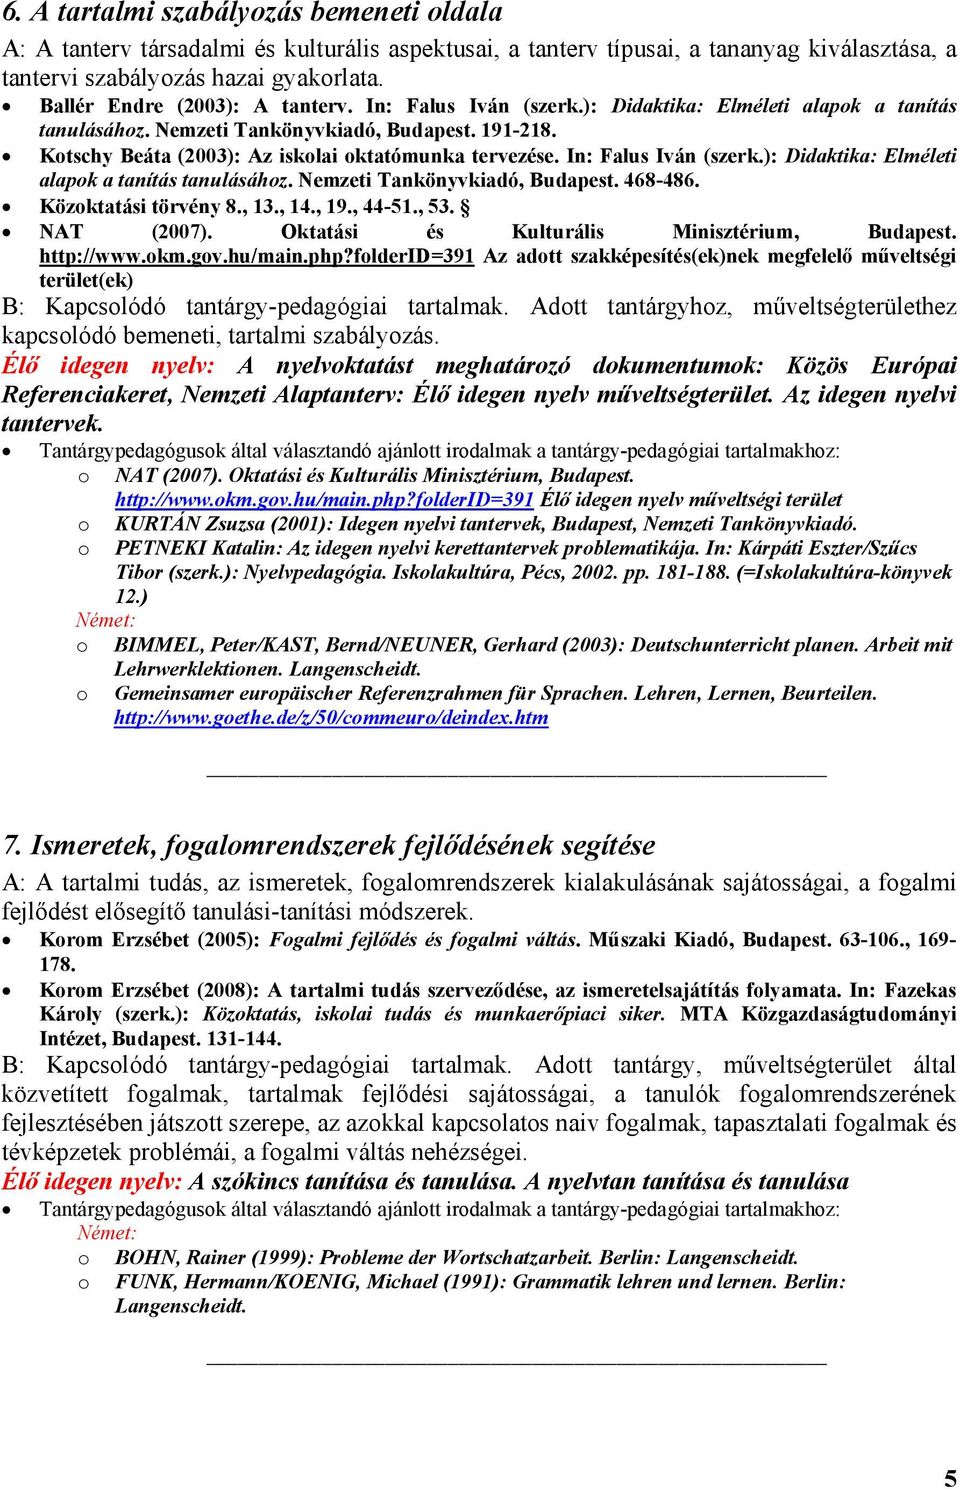 In: Falus Iván (szerk.): Didaktika: Elméleti alapk a tanítás tanulásáhz. Nemzeti Tankönyvkiadó, Budapest. 468-486. Közktatási törvény 8., 13., 14., 19., 44-51., 53. NAT (2007).